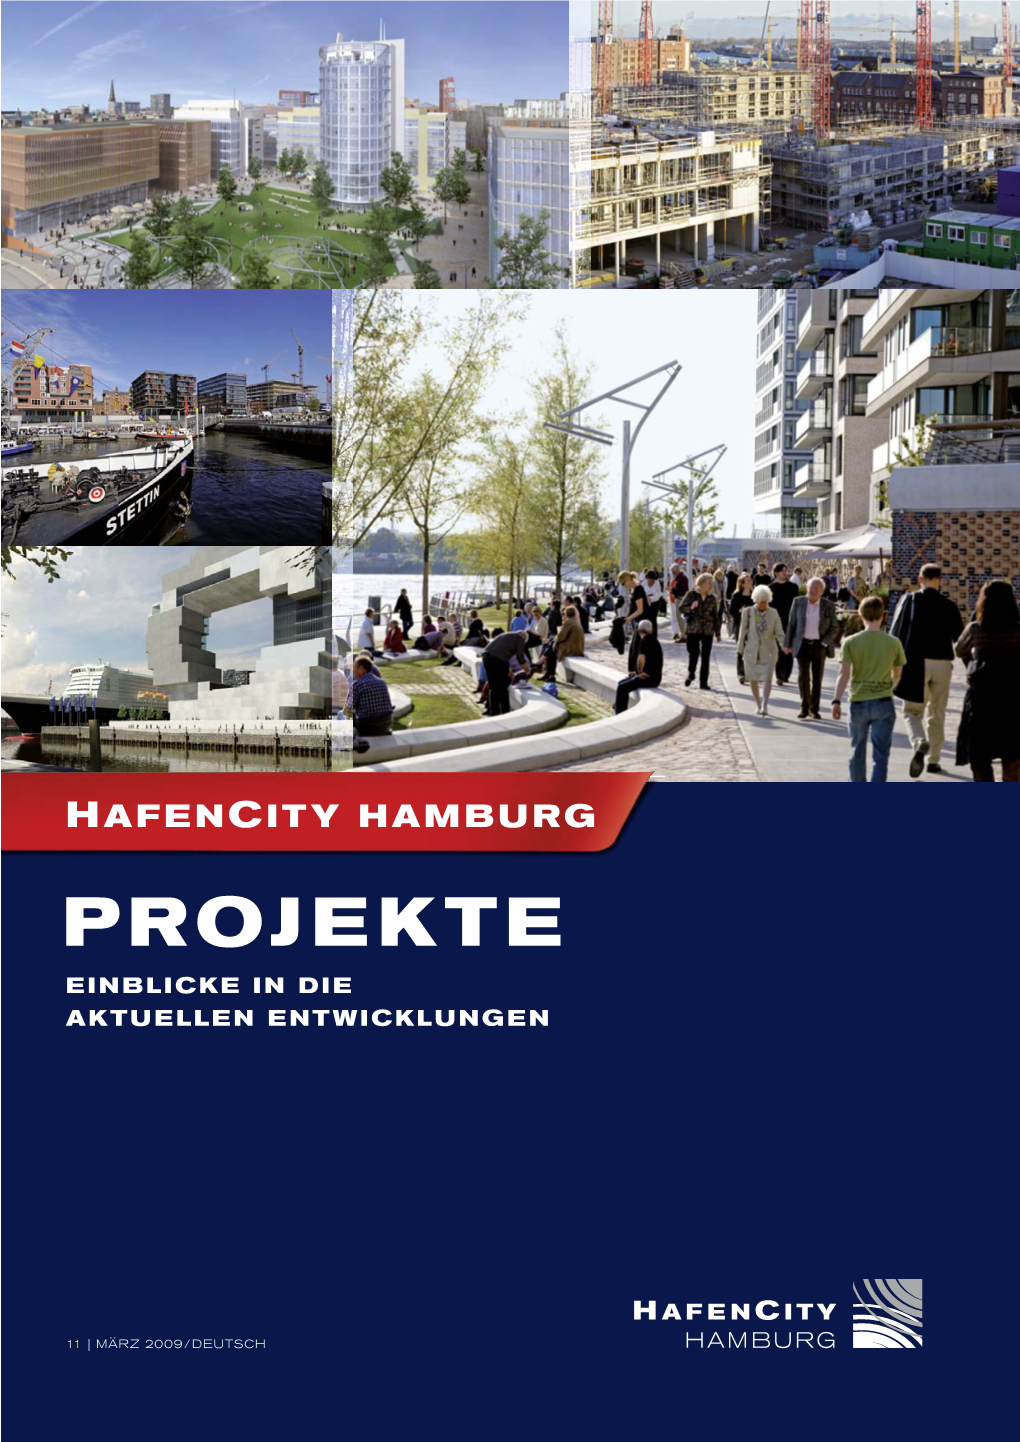 Hafencity Hamburg Gmbh Stellte, Zusammenhängende Städtebau- Strandkai – Realisiert